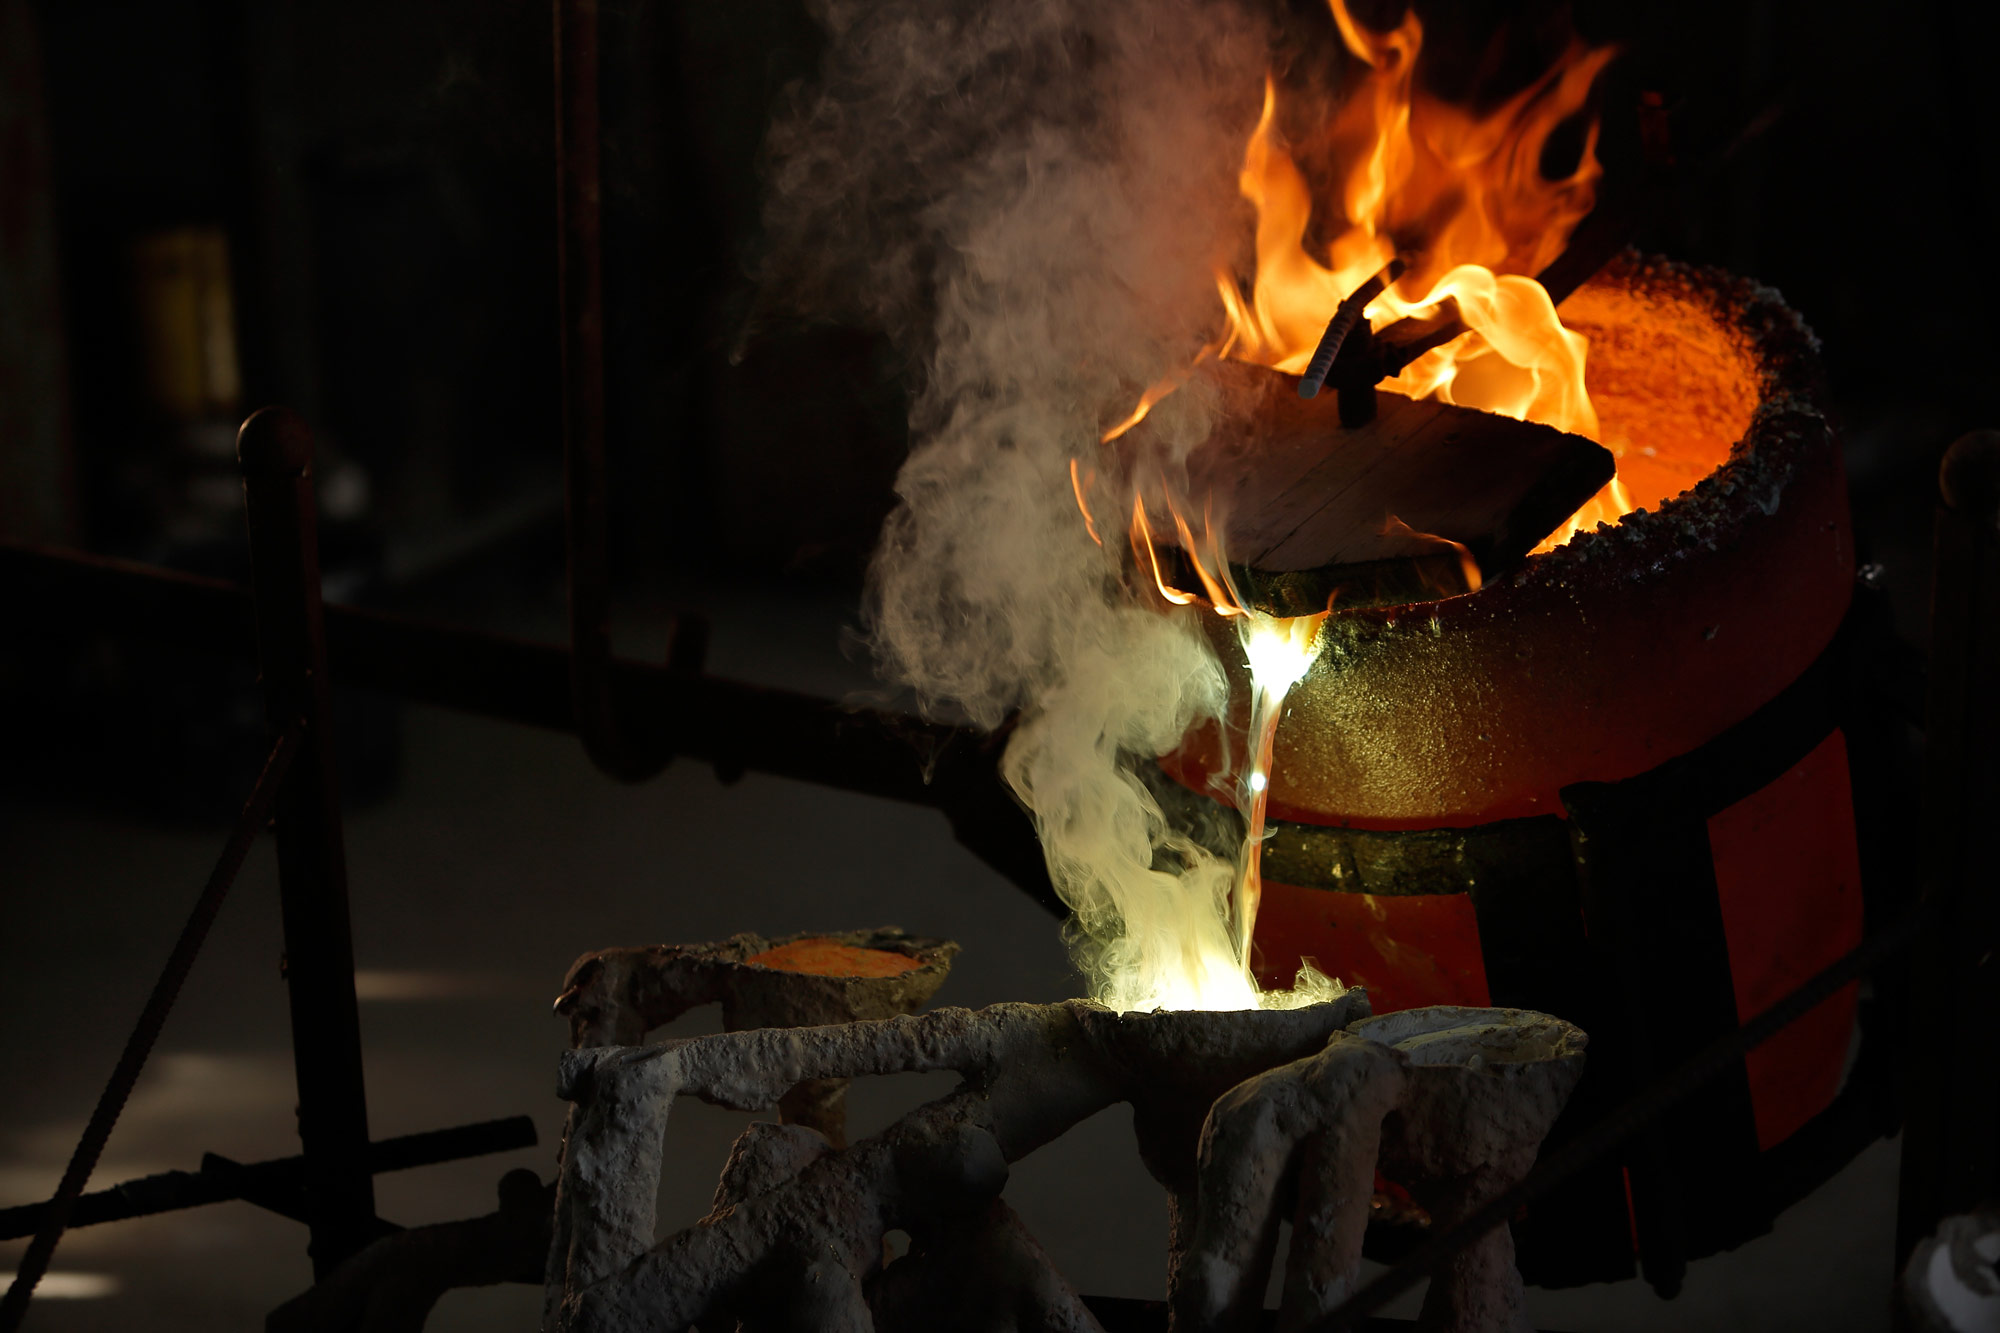 bronzo fusione dal crogiolo cola il bronzo fuso nello stampo e il fumo e le fiamme si alzano